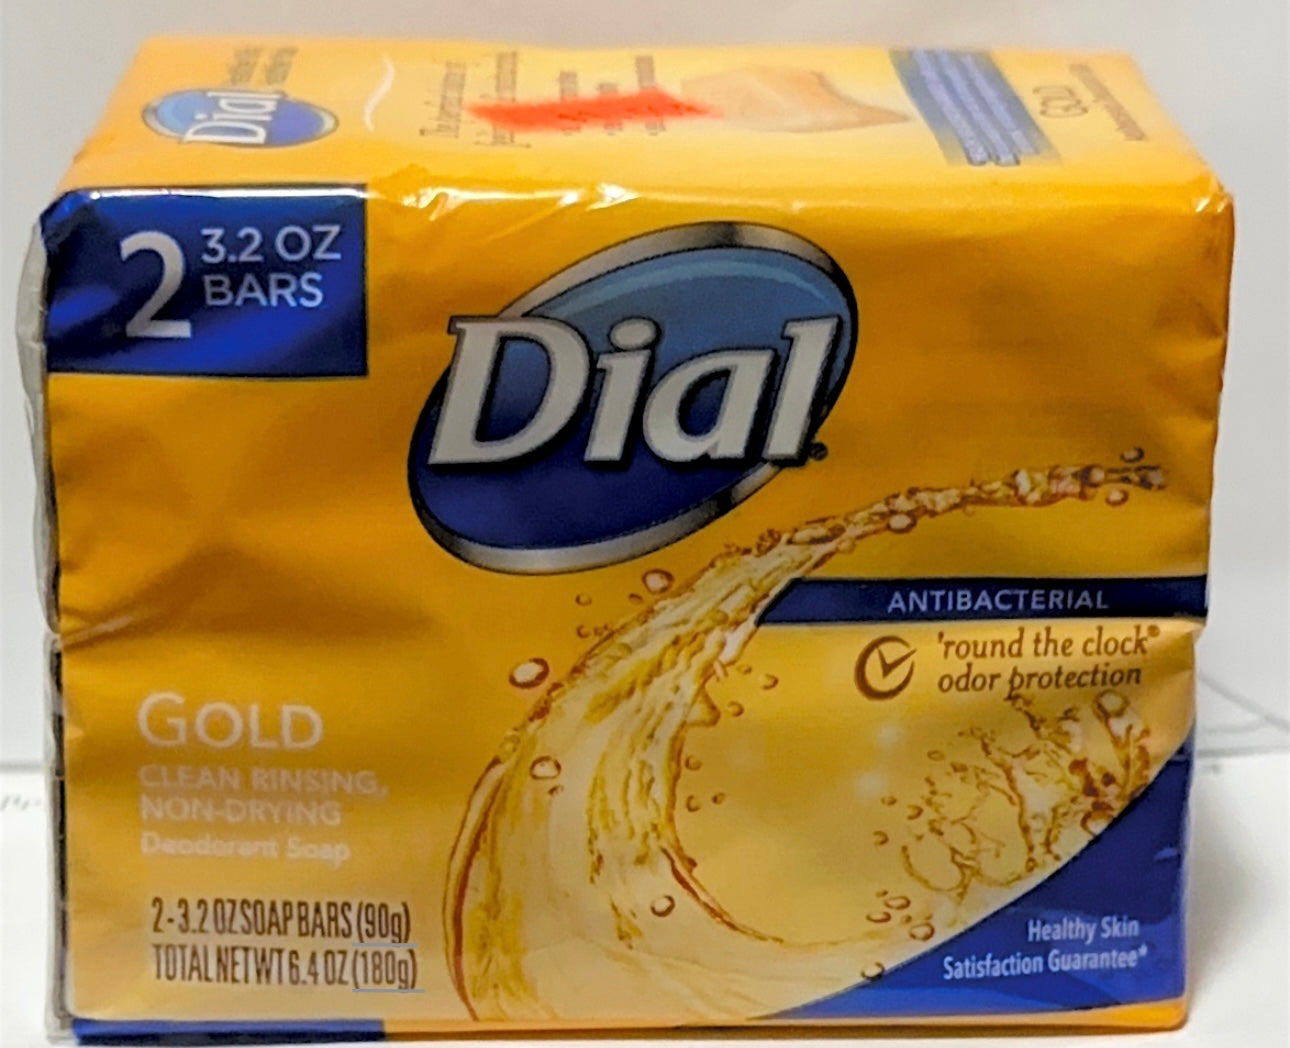 Dial Antibacterial Bar Soap, Gold, 3.2 oz, 2 Bars